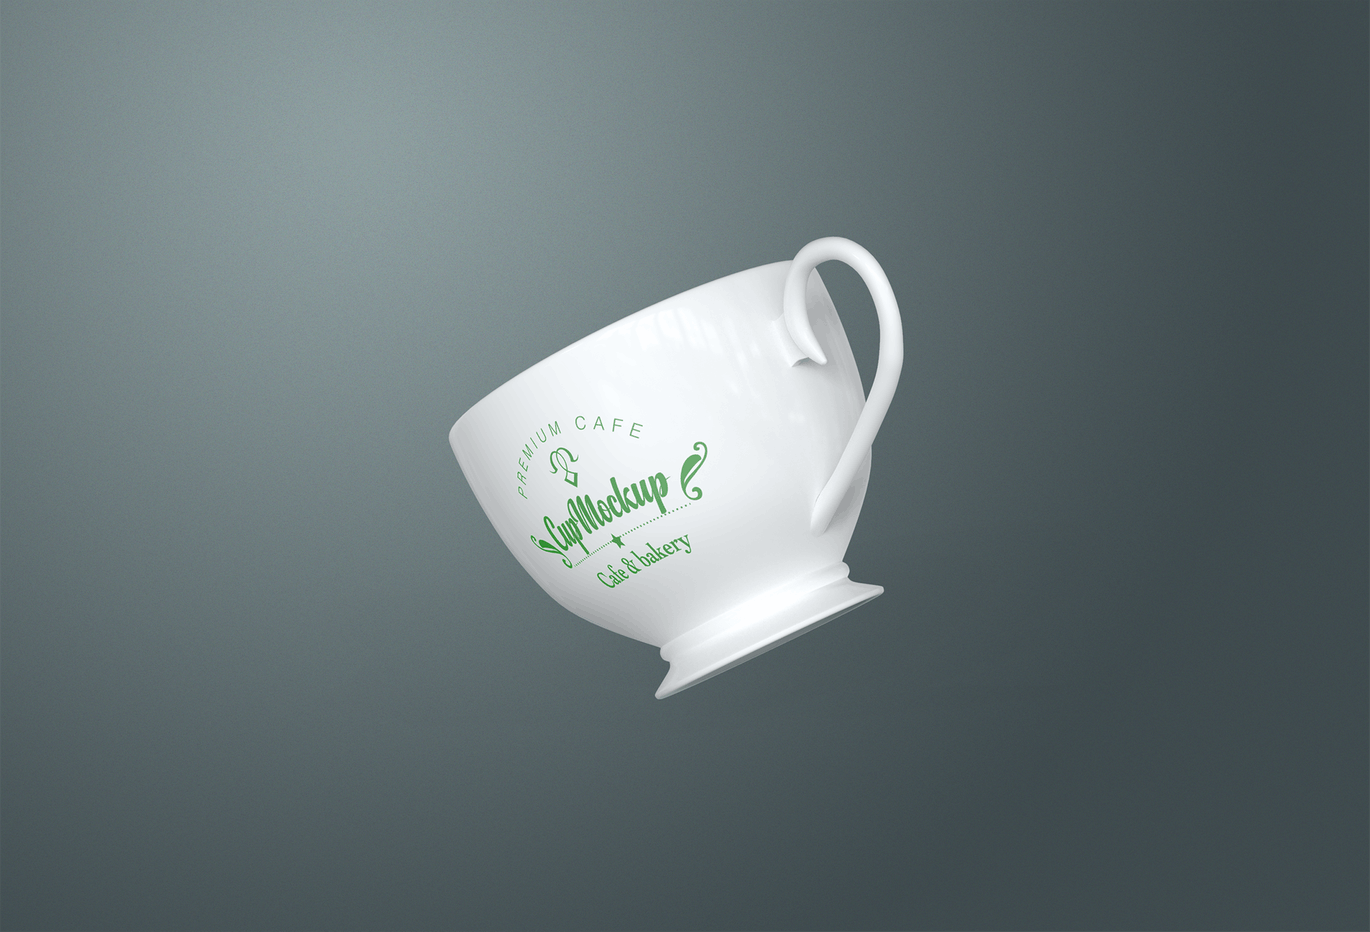 陶瓷茶杯咖啡杯外观设计样机模板v2 Cup Mockup 2.0插图(11)